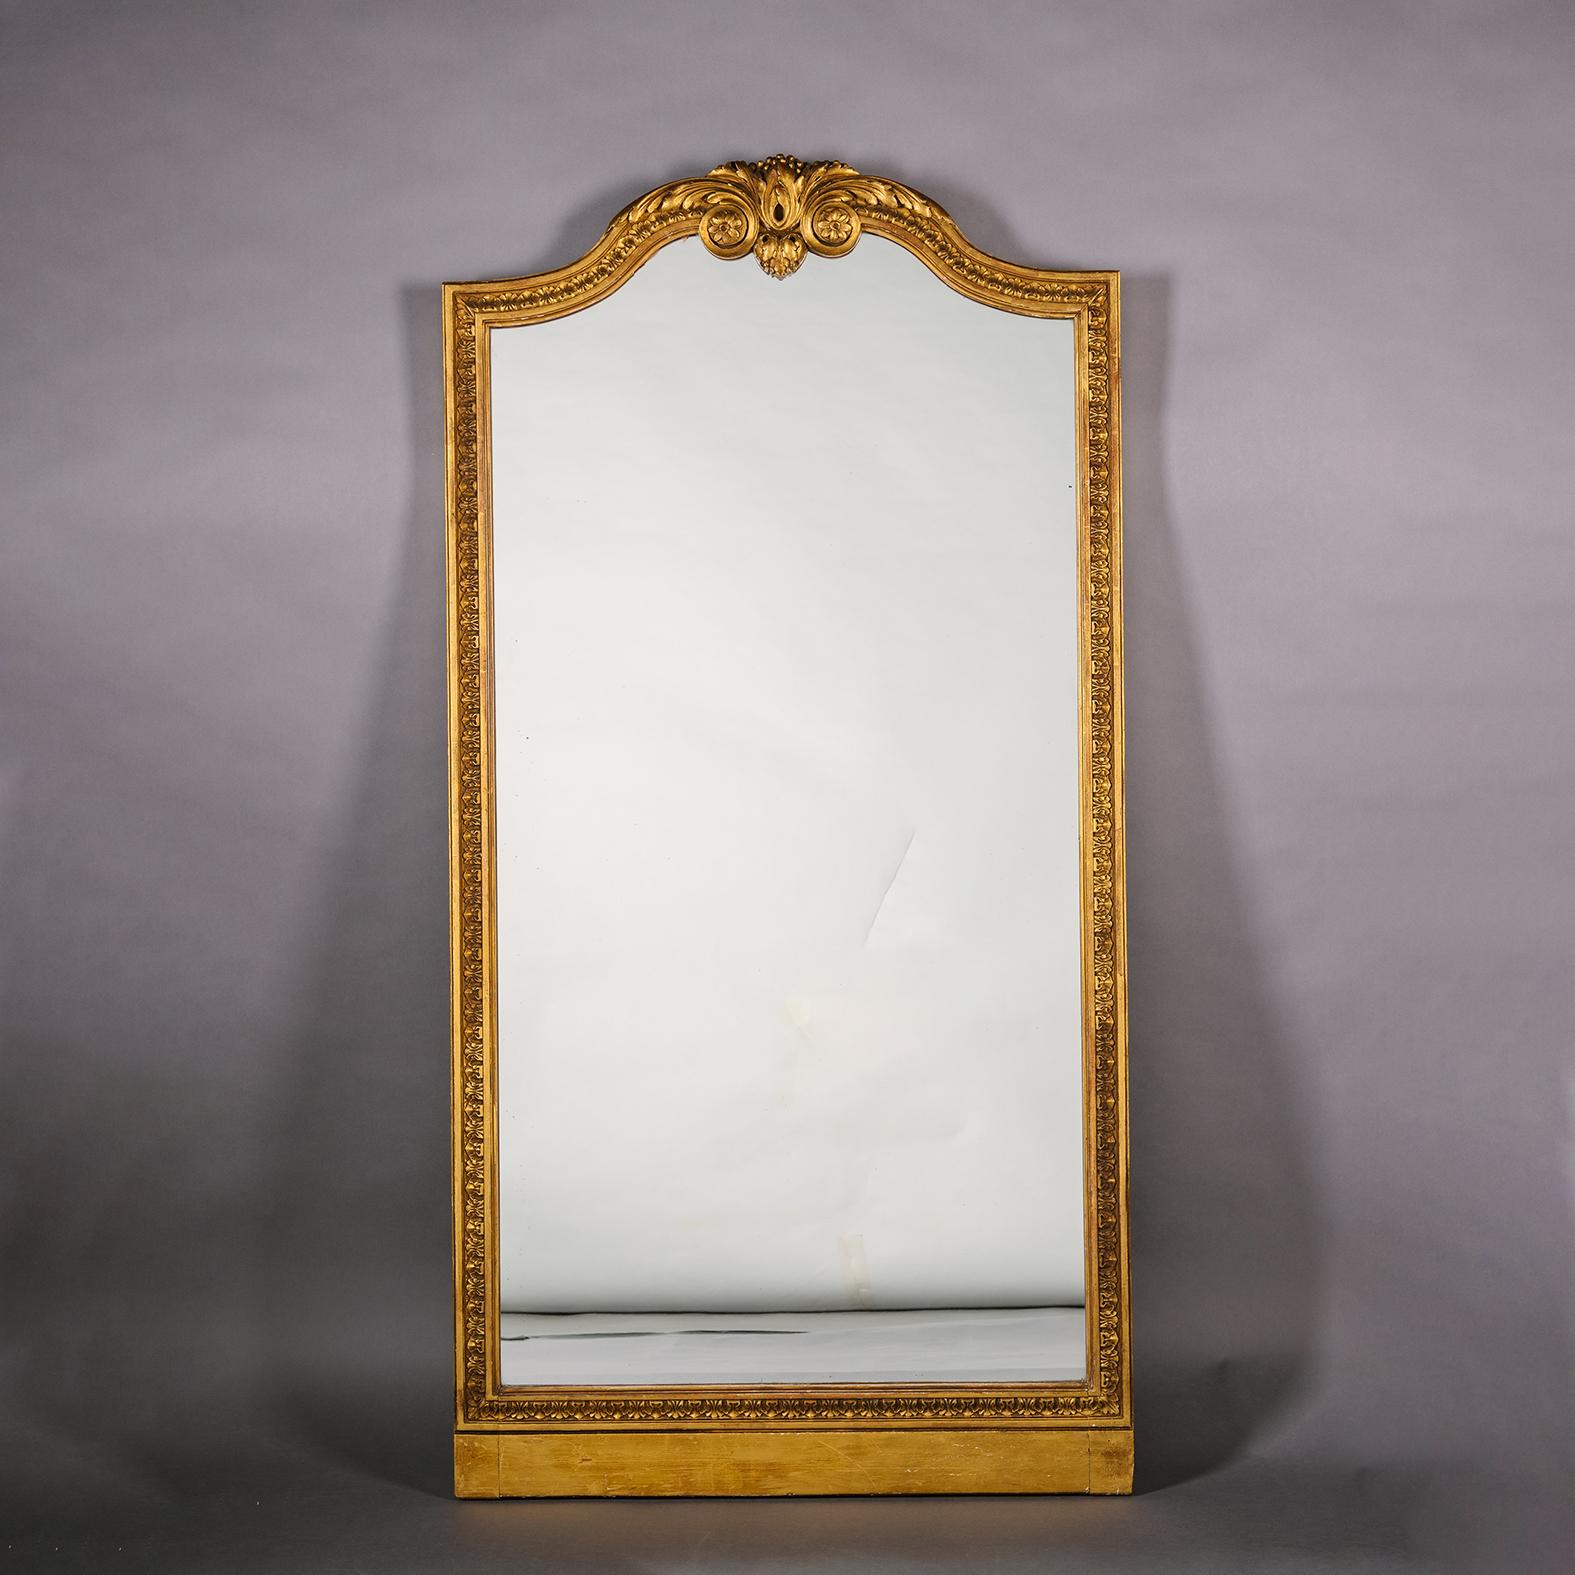 Paire de miroirs en bois doré sculpté de style Louis XVI. 

Chaque miroir possède une plaque de miroir arquée et un cadre correspondant sculpté d'un décor de feuilles mortes et d'un fronton arqué centré par une volute d'acanthe frondeuse. 

France,